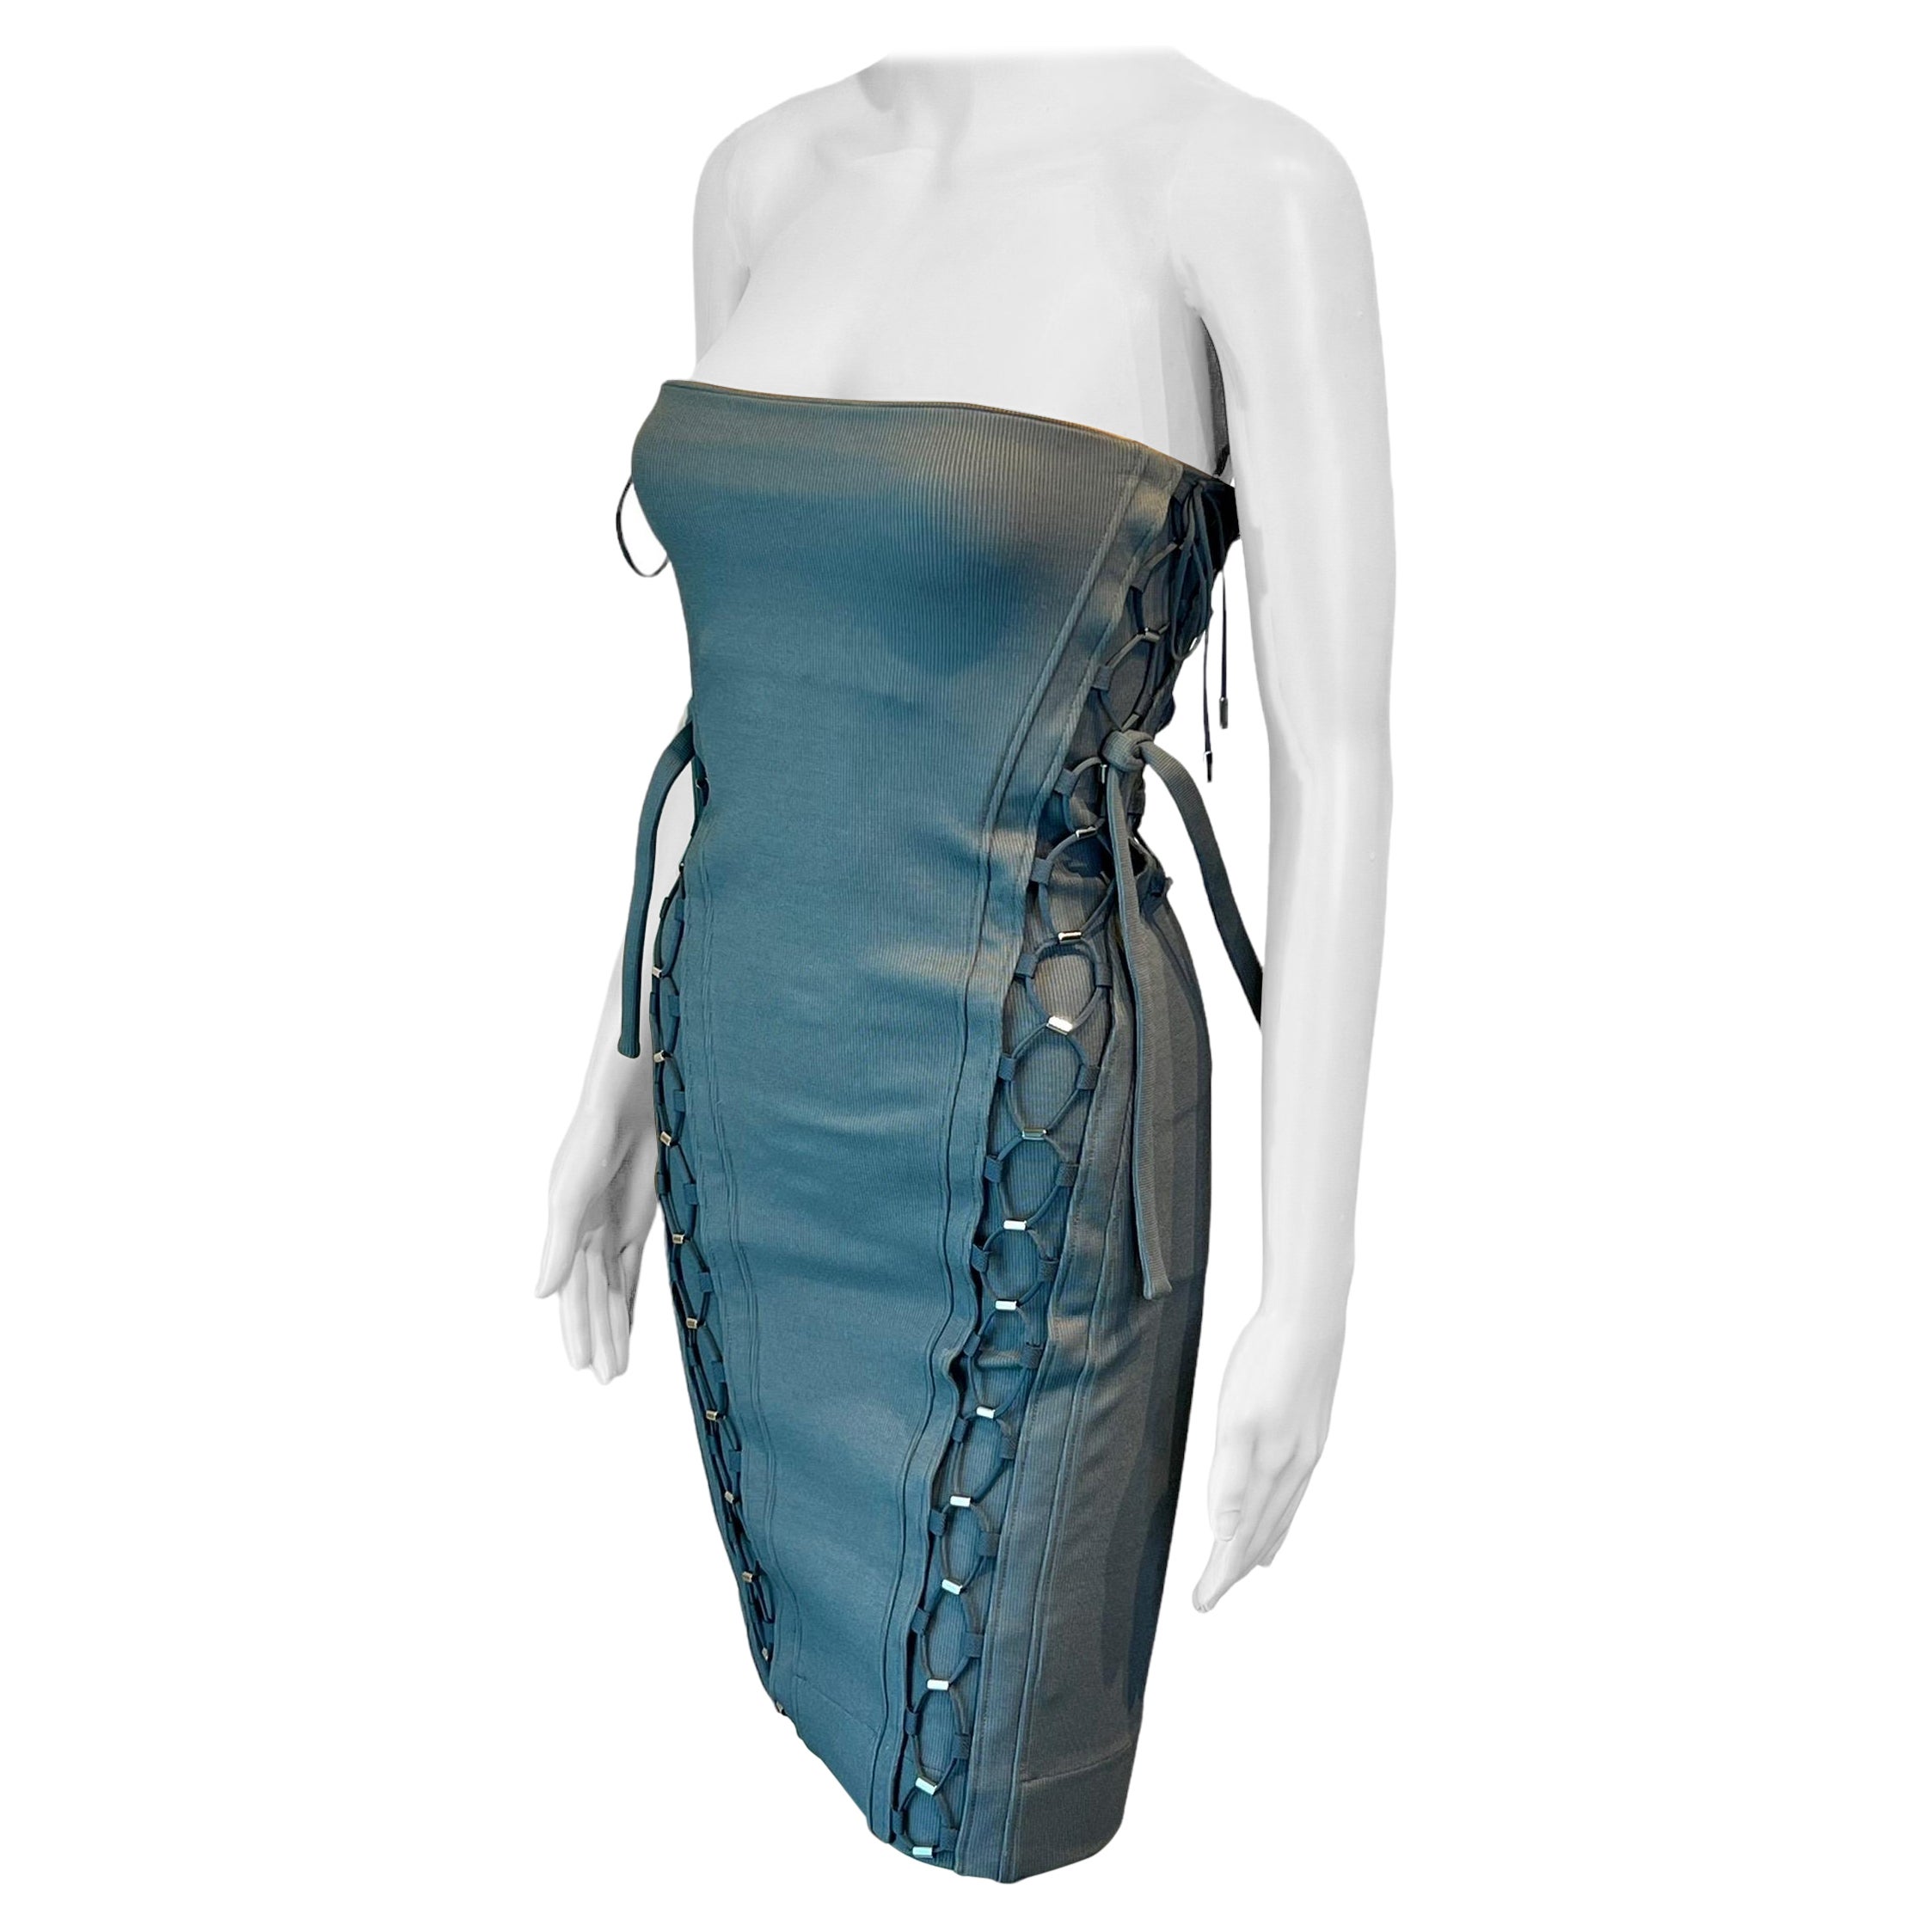 Gucci F/S 2010 Ungetragenes Bodycon-Minikleid mit Schnürung und Bandage in Grau, Bandage